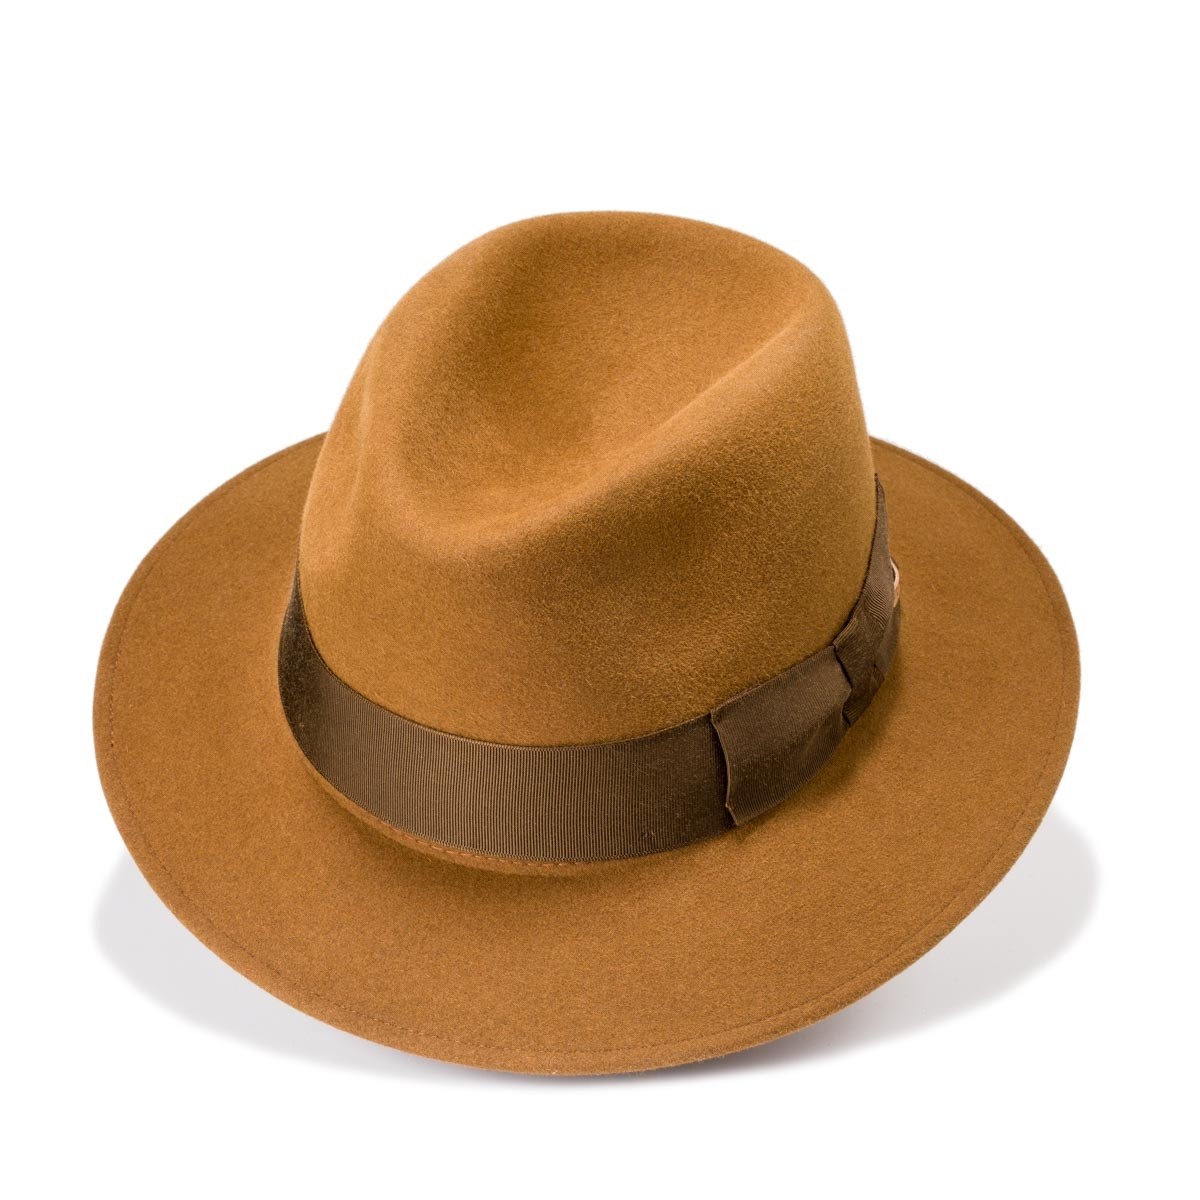 Corme sombrero fieltro de pelo estilo Copa Partida color Marrón Ocre. Hecho a mano. Fernández y Roche